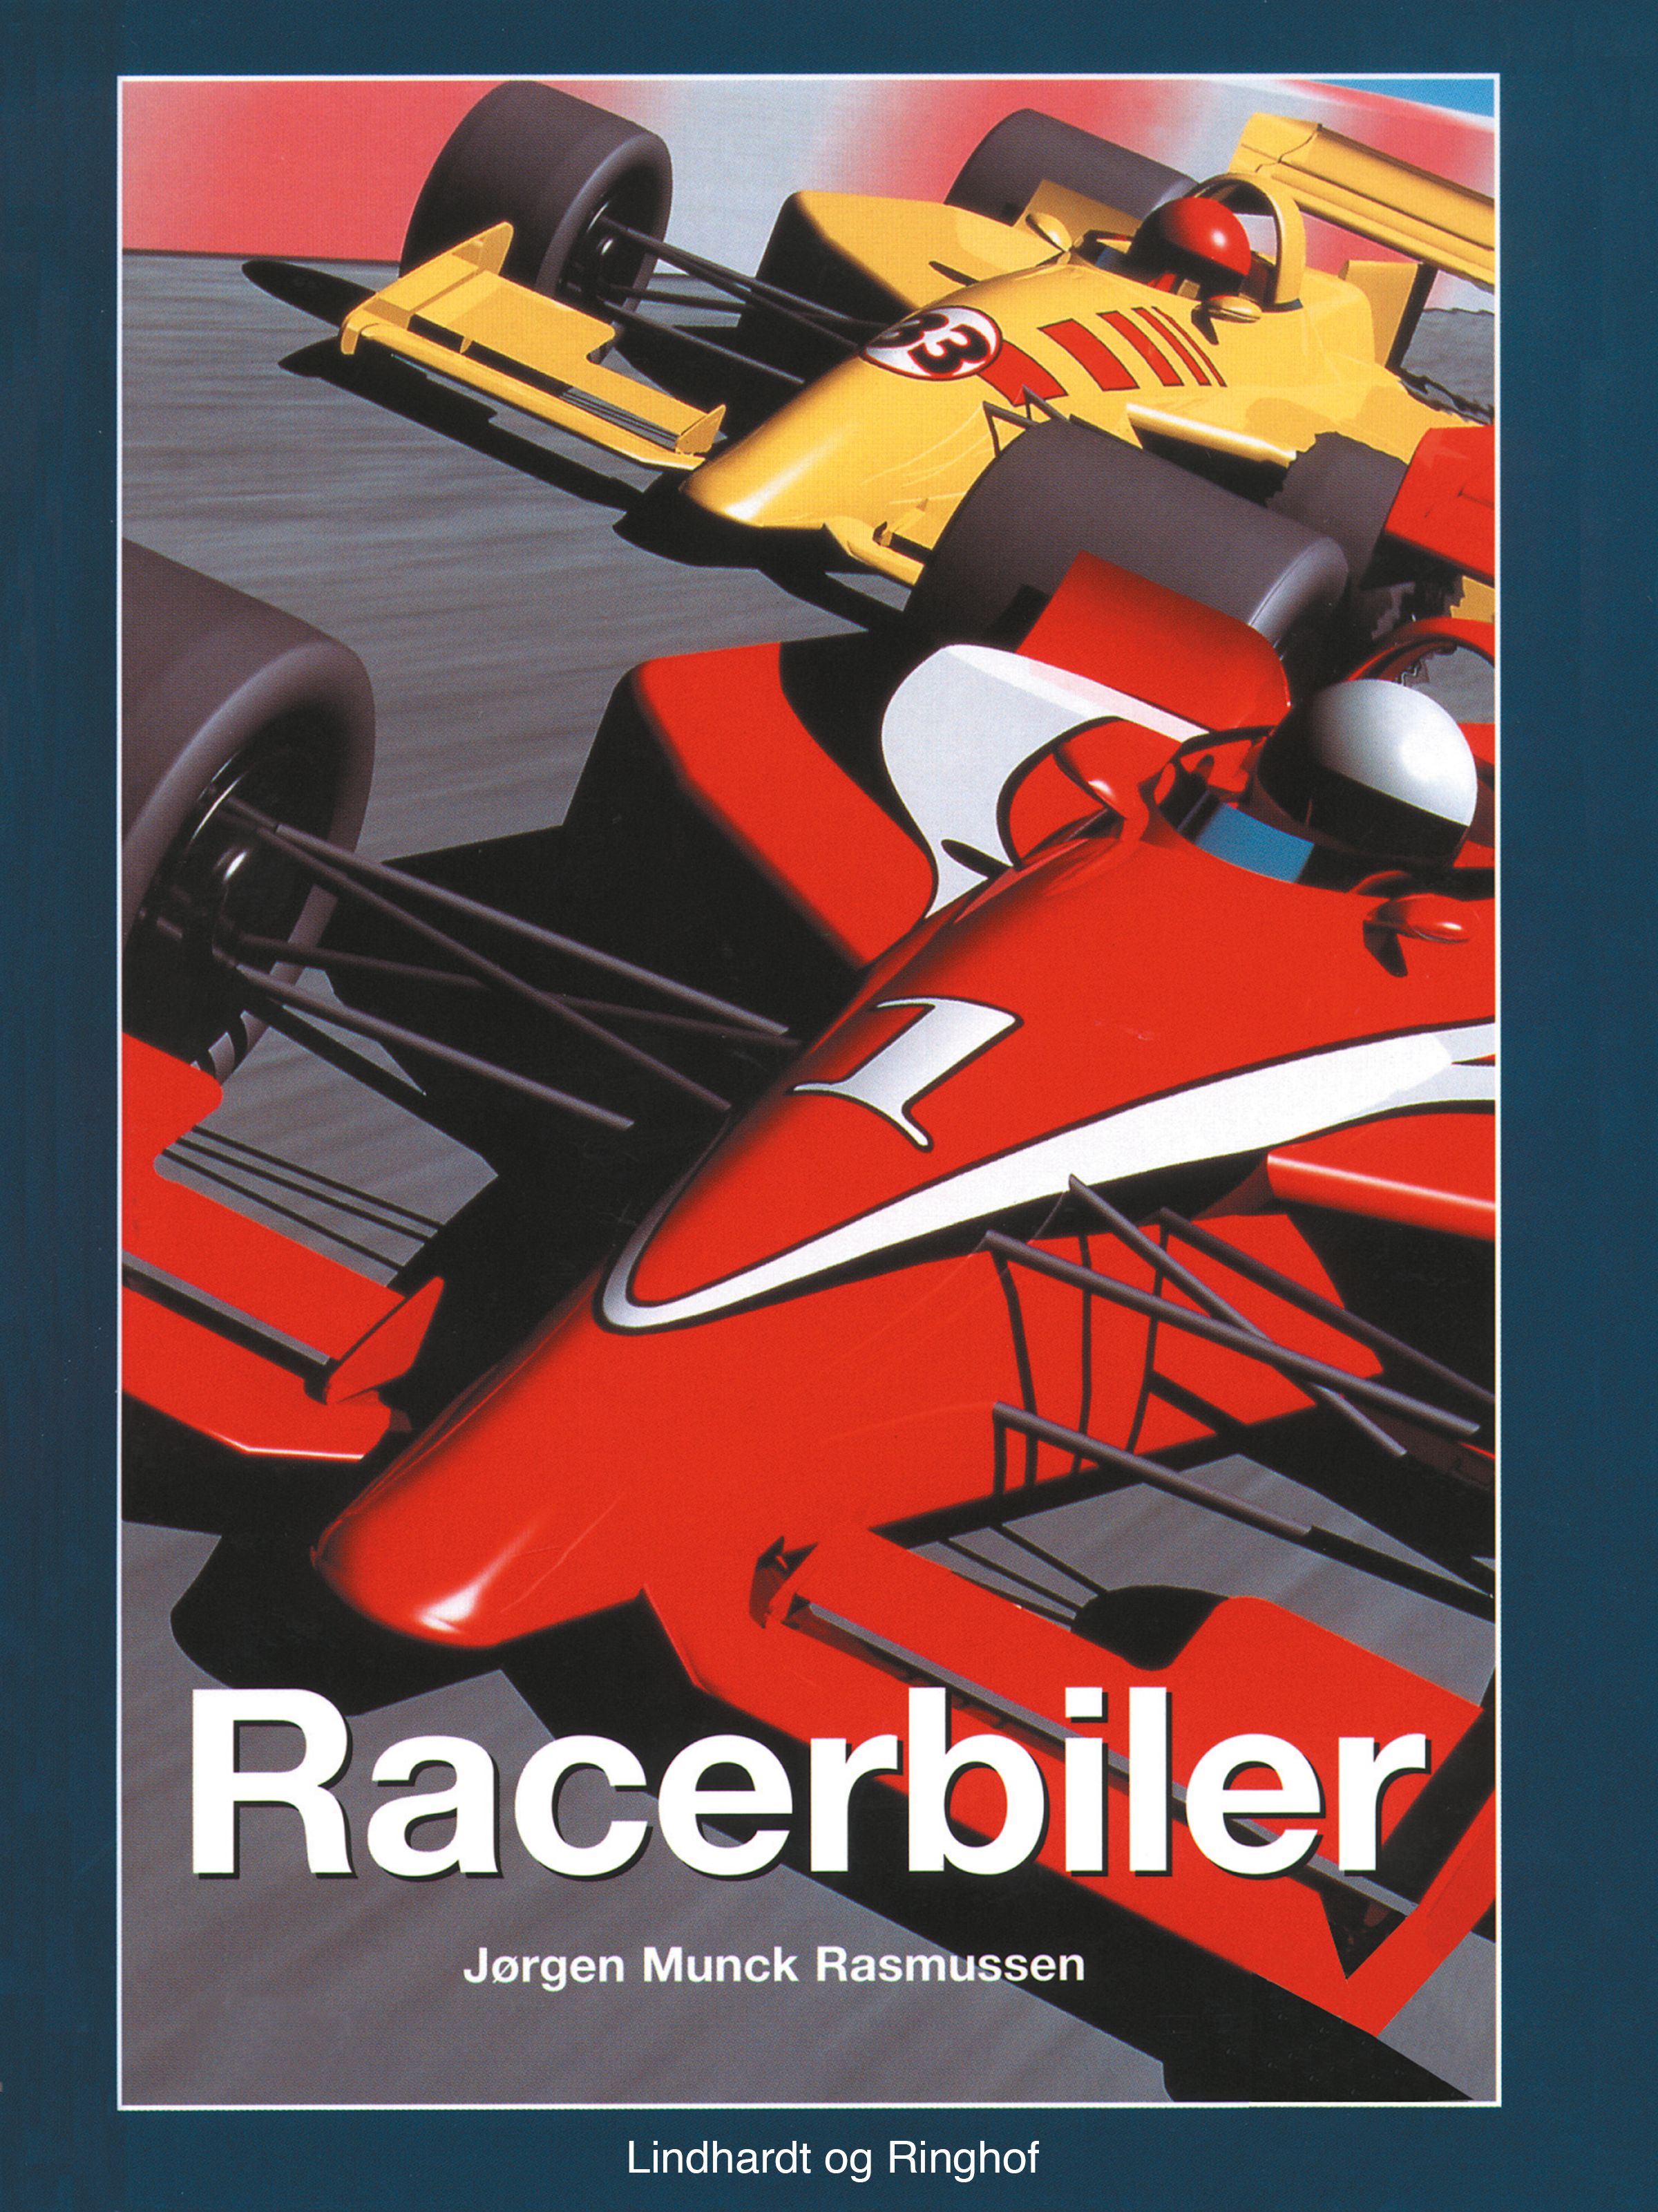 Racerbiler, ljudbok av Jørgen Munck Rasmussen